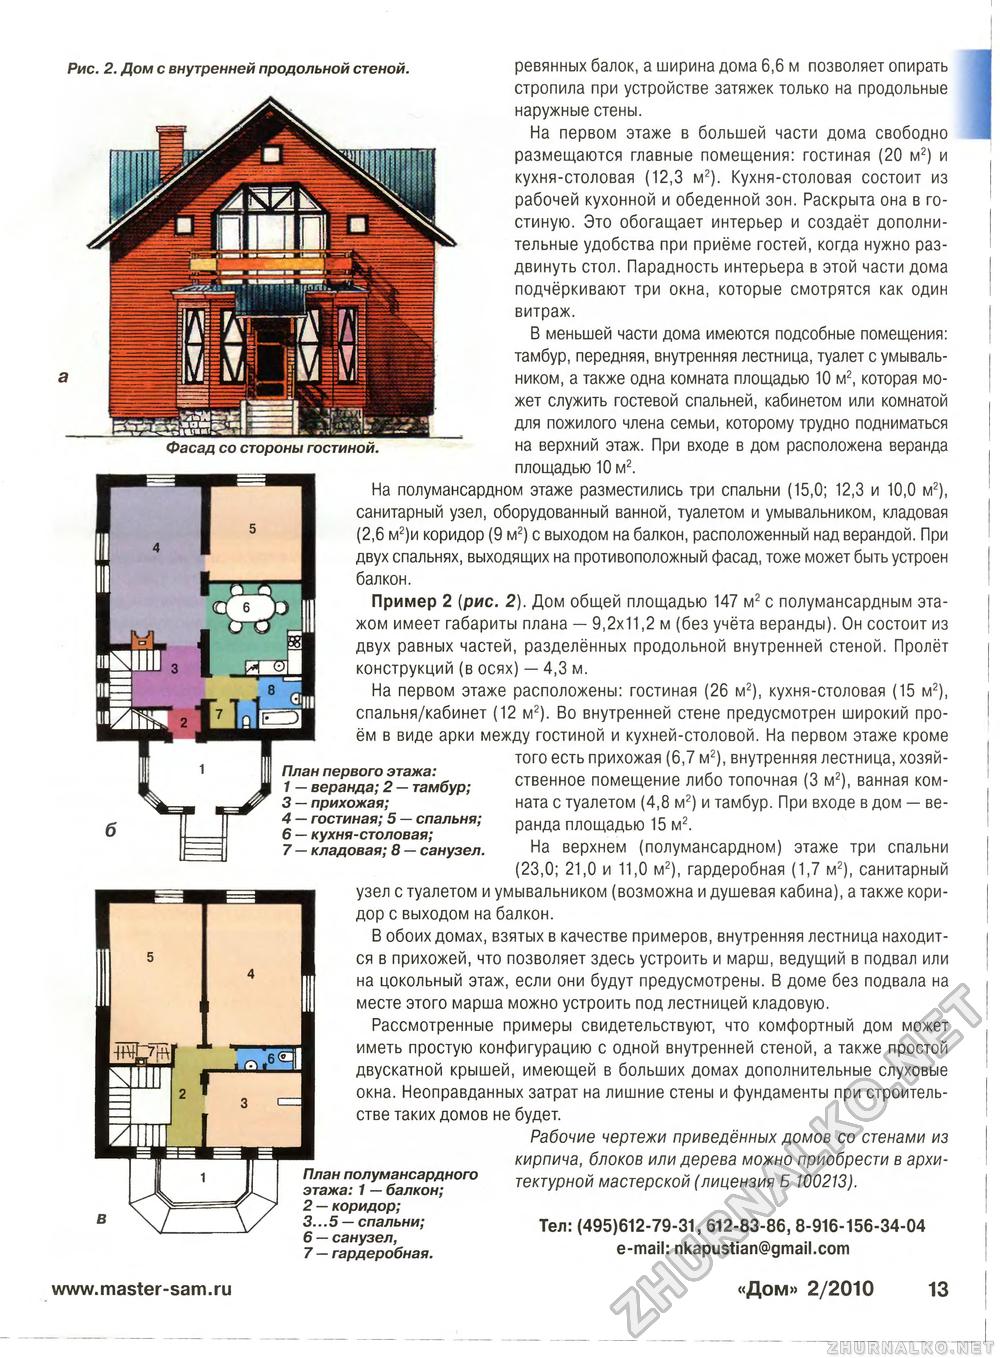 Дом 2010-02, страница 13